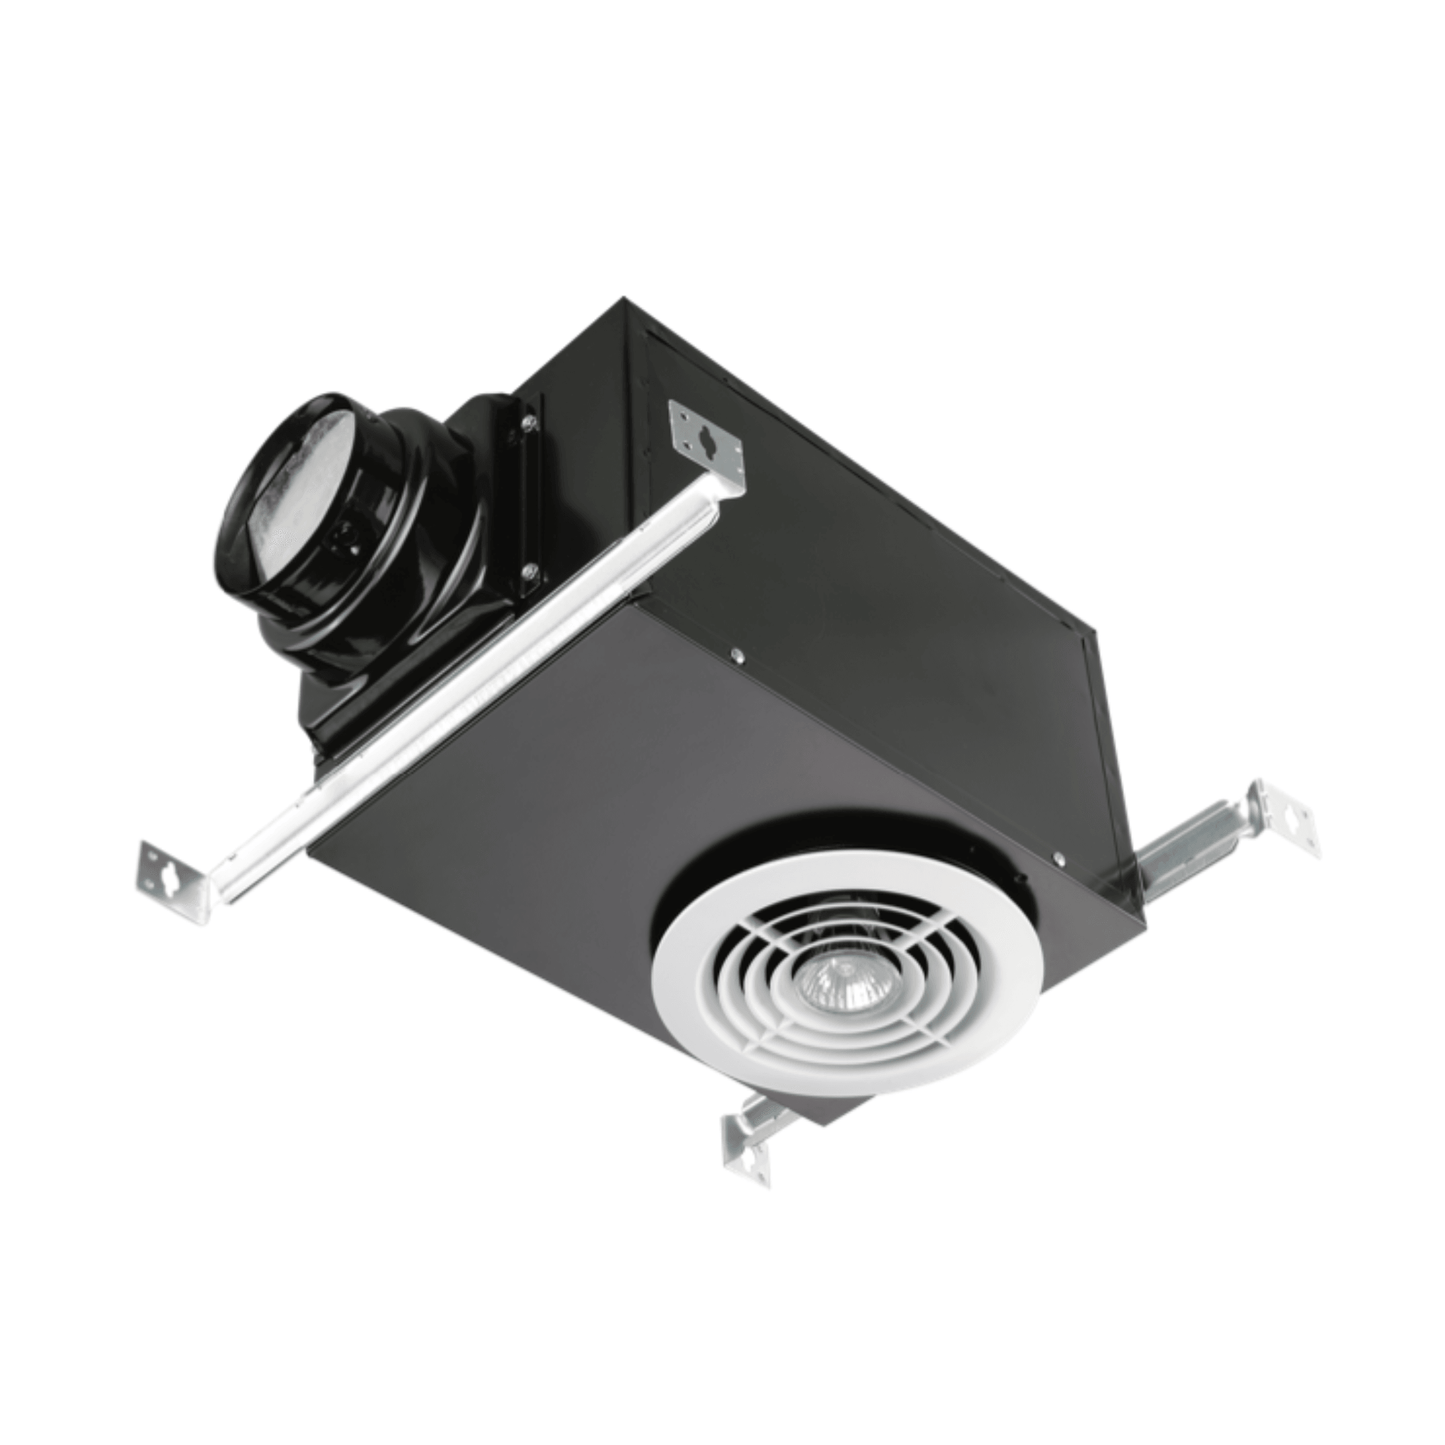 Vents SE80 RVL-NM LED Light Box